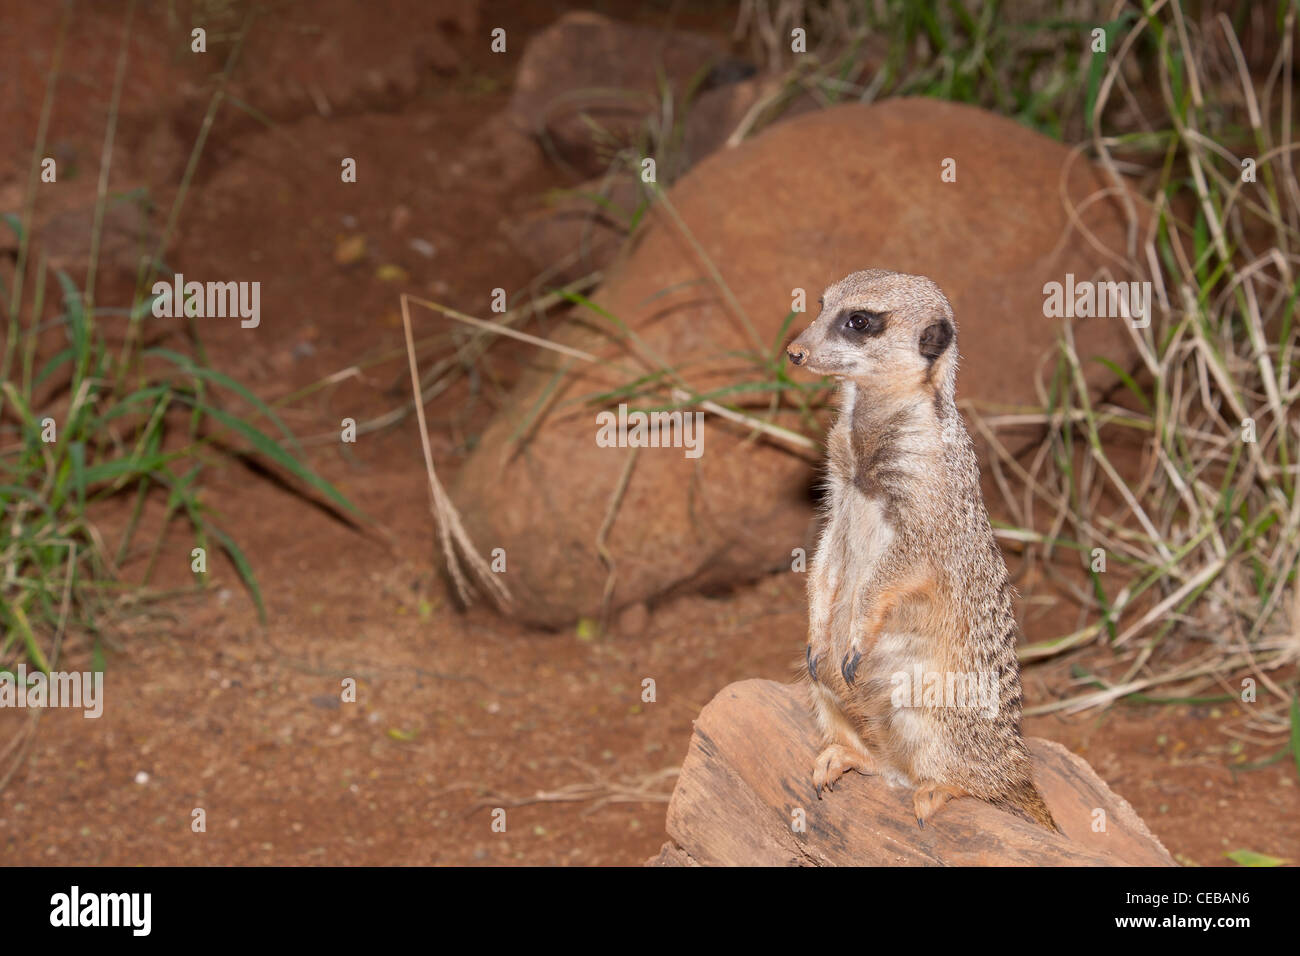 Meerkat, Suricata suricatta Stock Photo